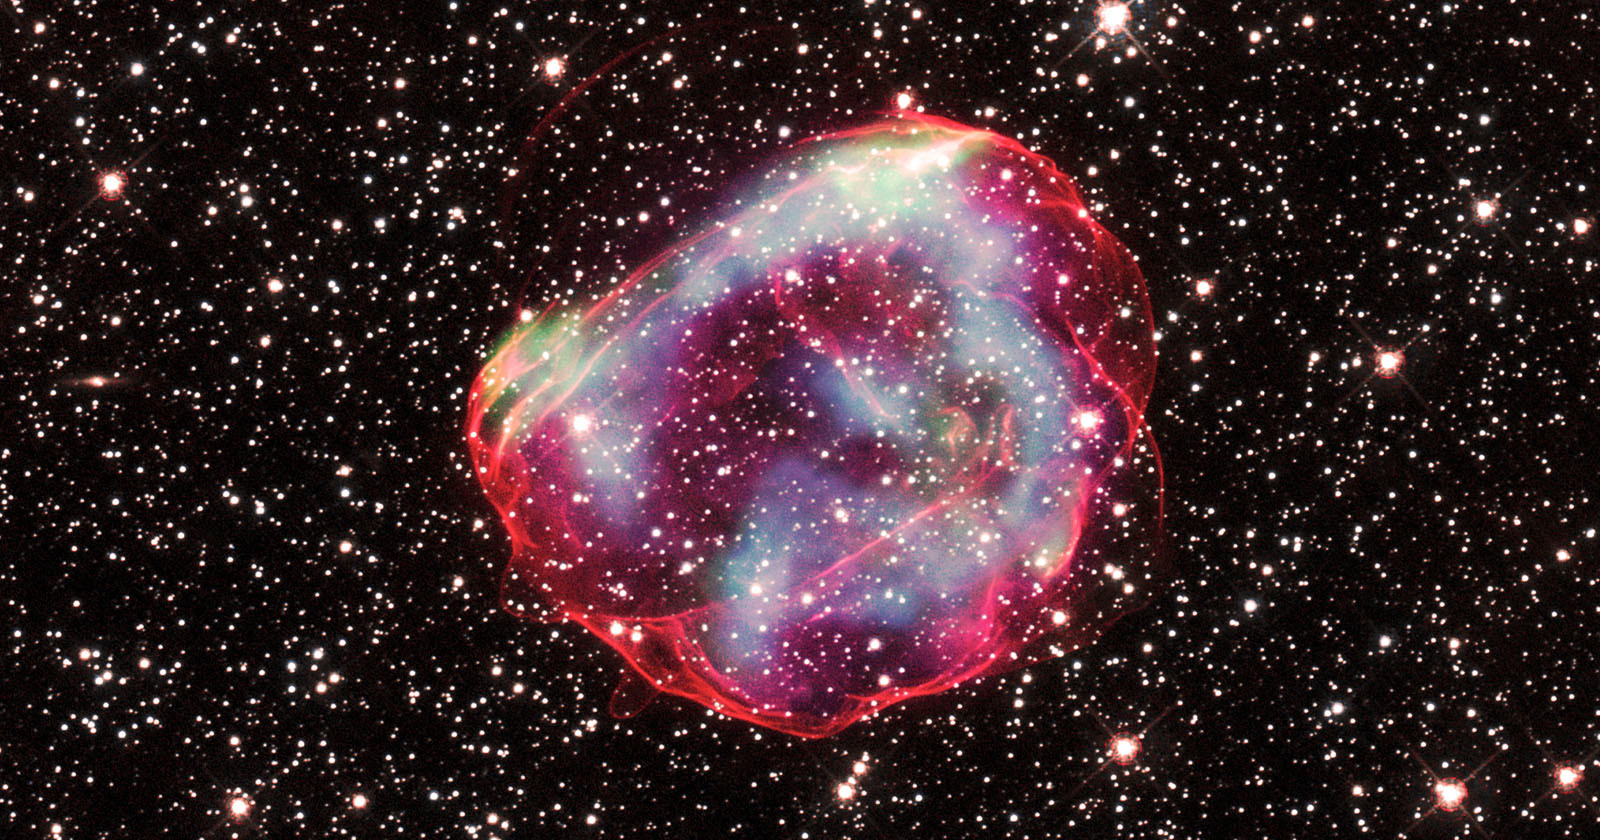  three nasa telescopes combined capture 670-year-old supernova 